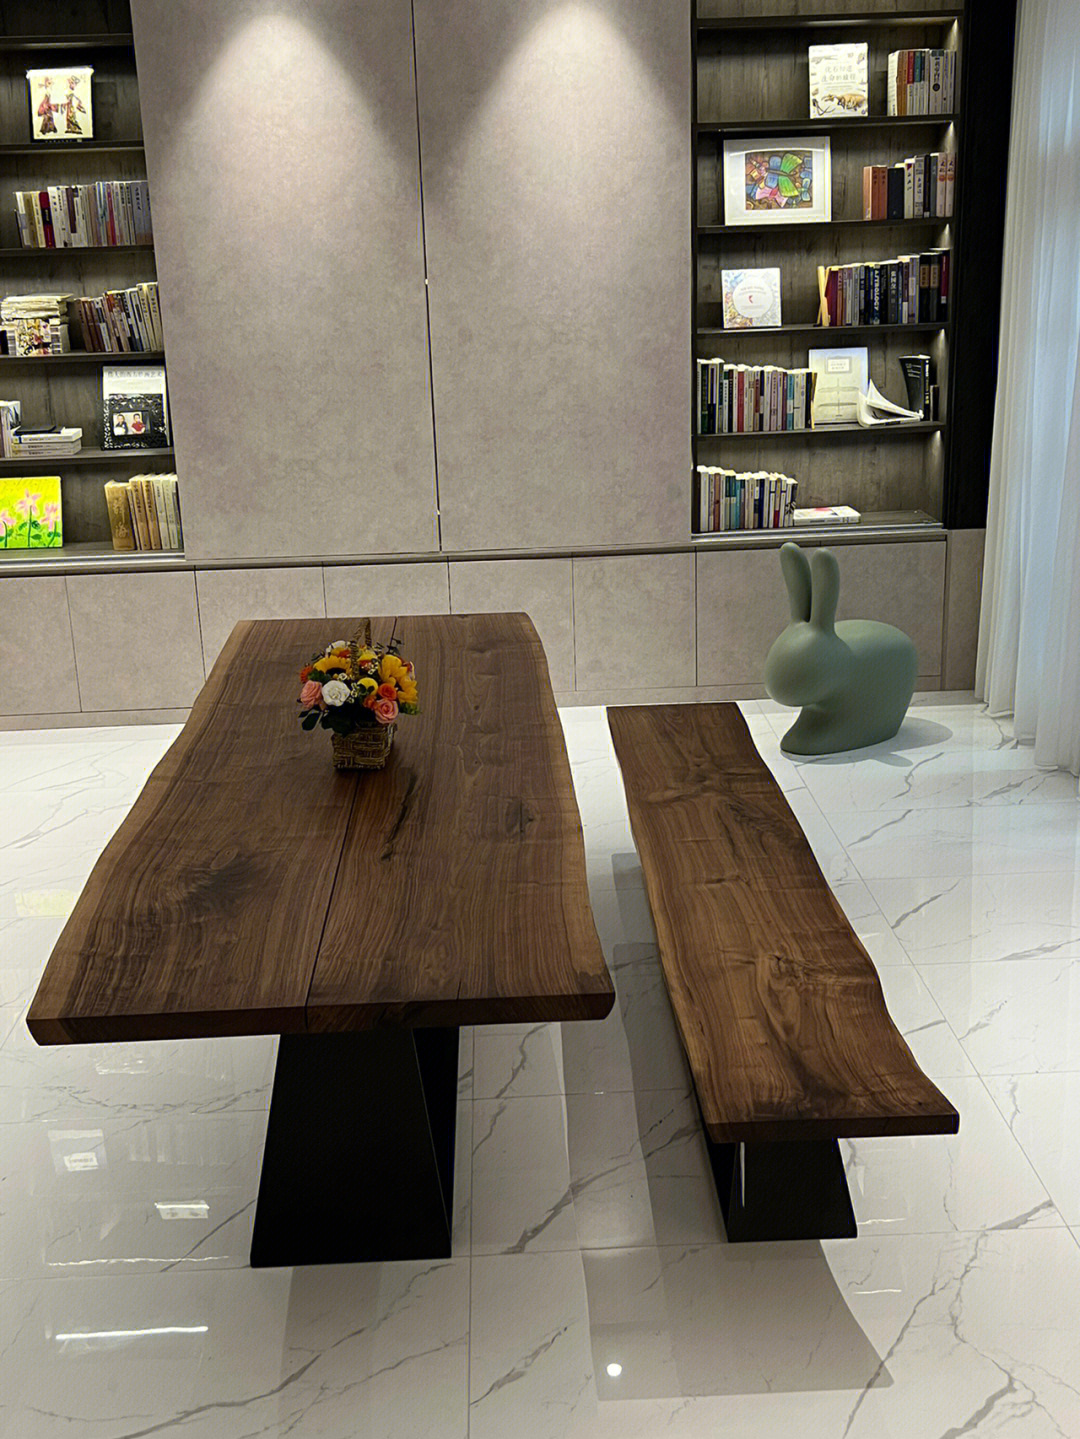 这款桌子是由两块独板木头制作而成,天然纯粹,质朴无华,自然大气